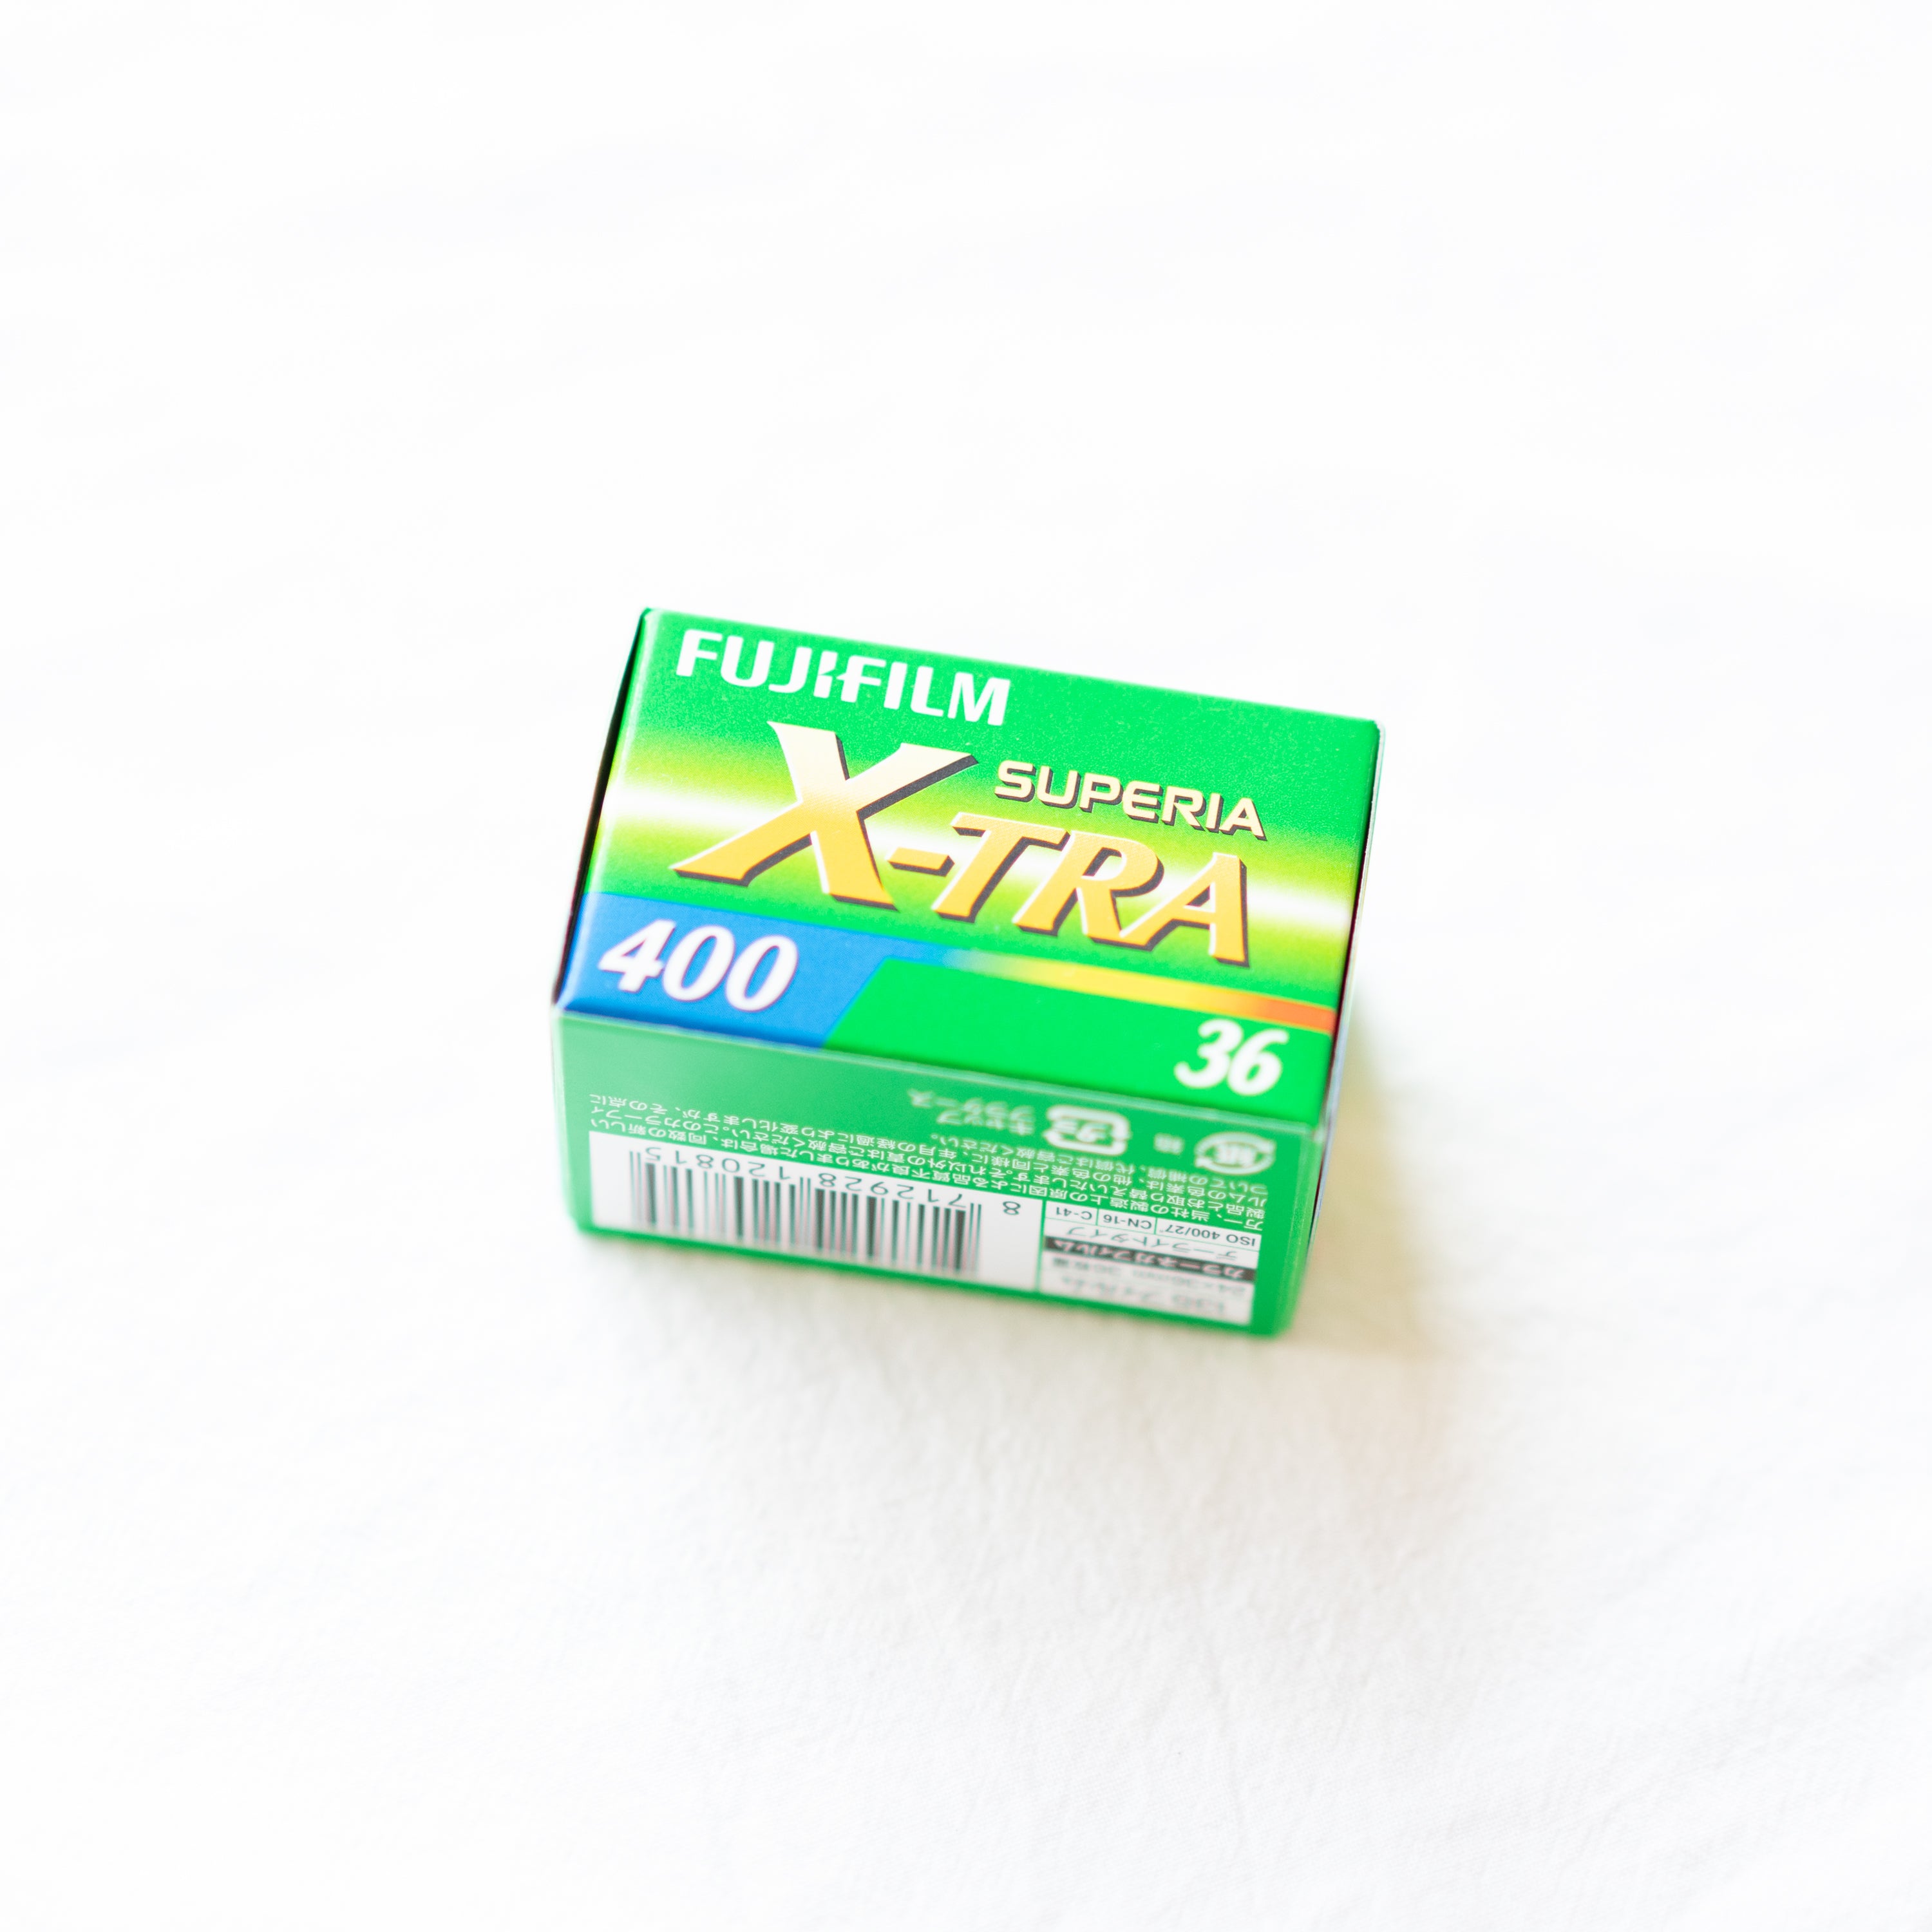 フジカラー ネガフィルム400 SUPERIA X-TRA - フィルムカメラ